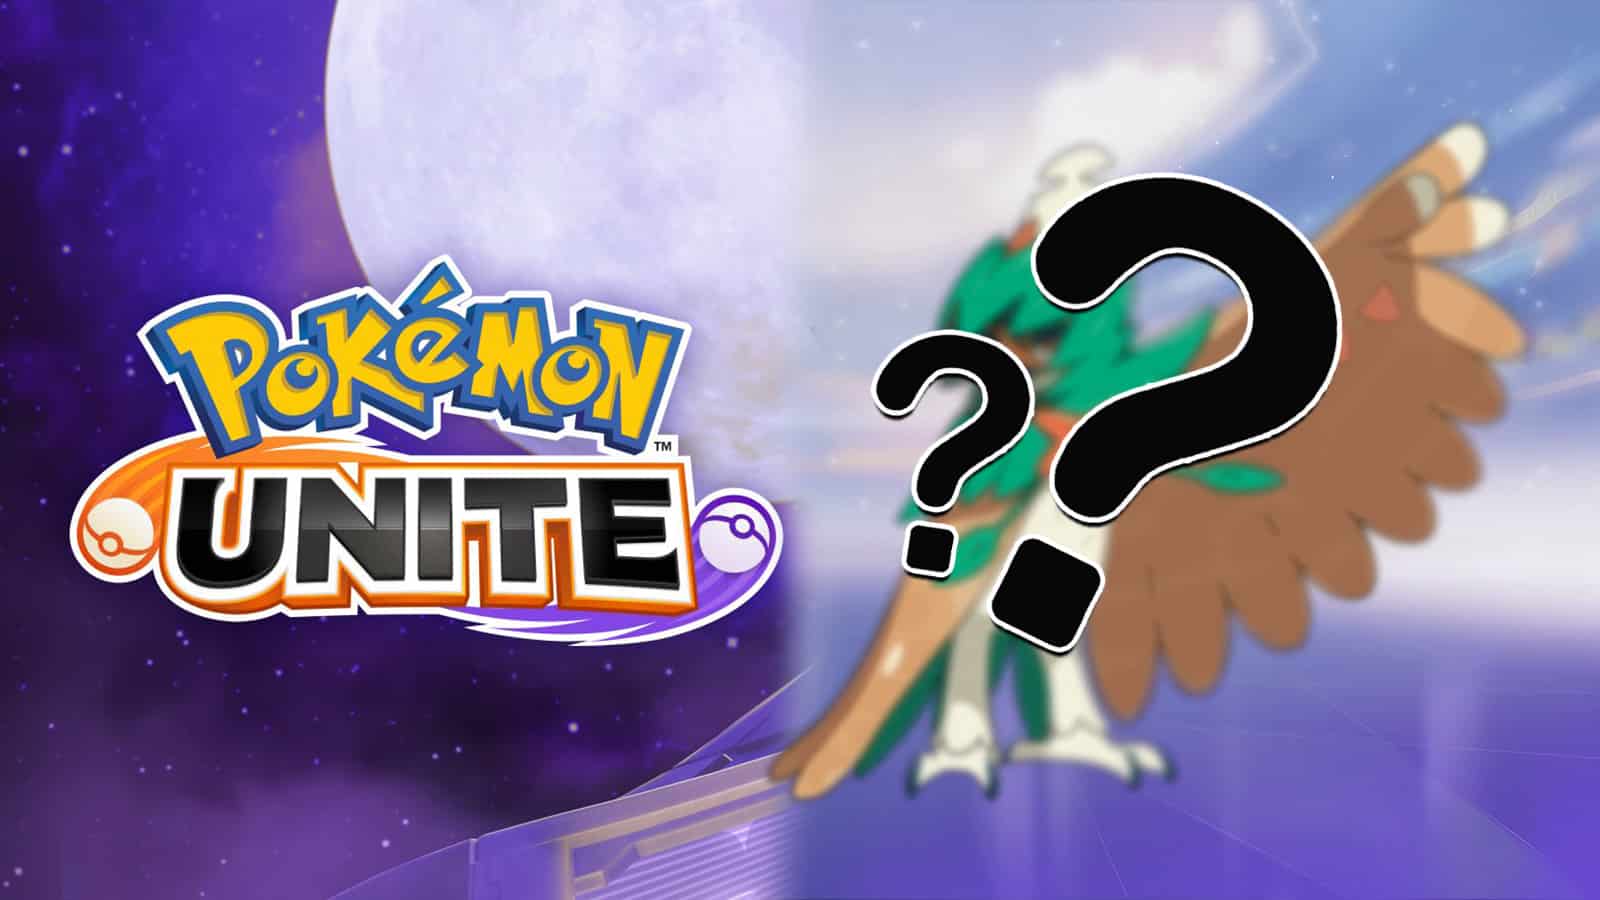 Pokemon Unite Logo next to blurred Pokemon